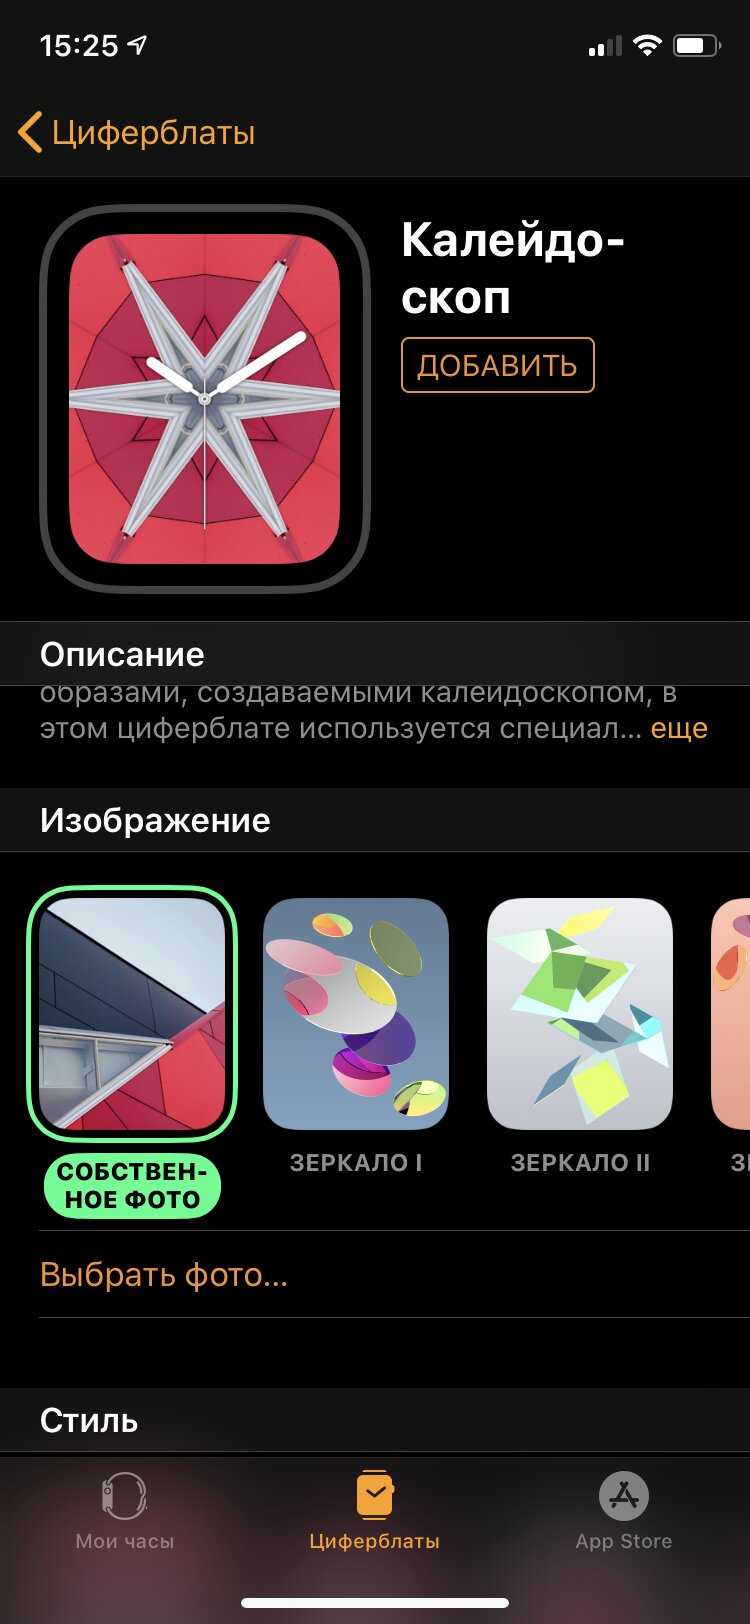 3 лучших приложения для отслеживания сна на iphone и apple watch | appleinsider.ru